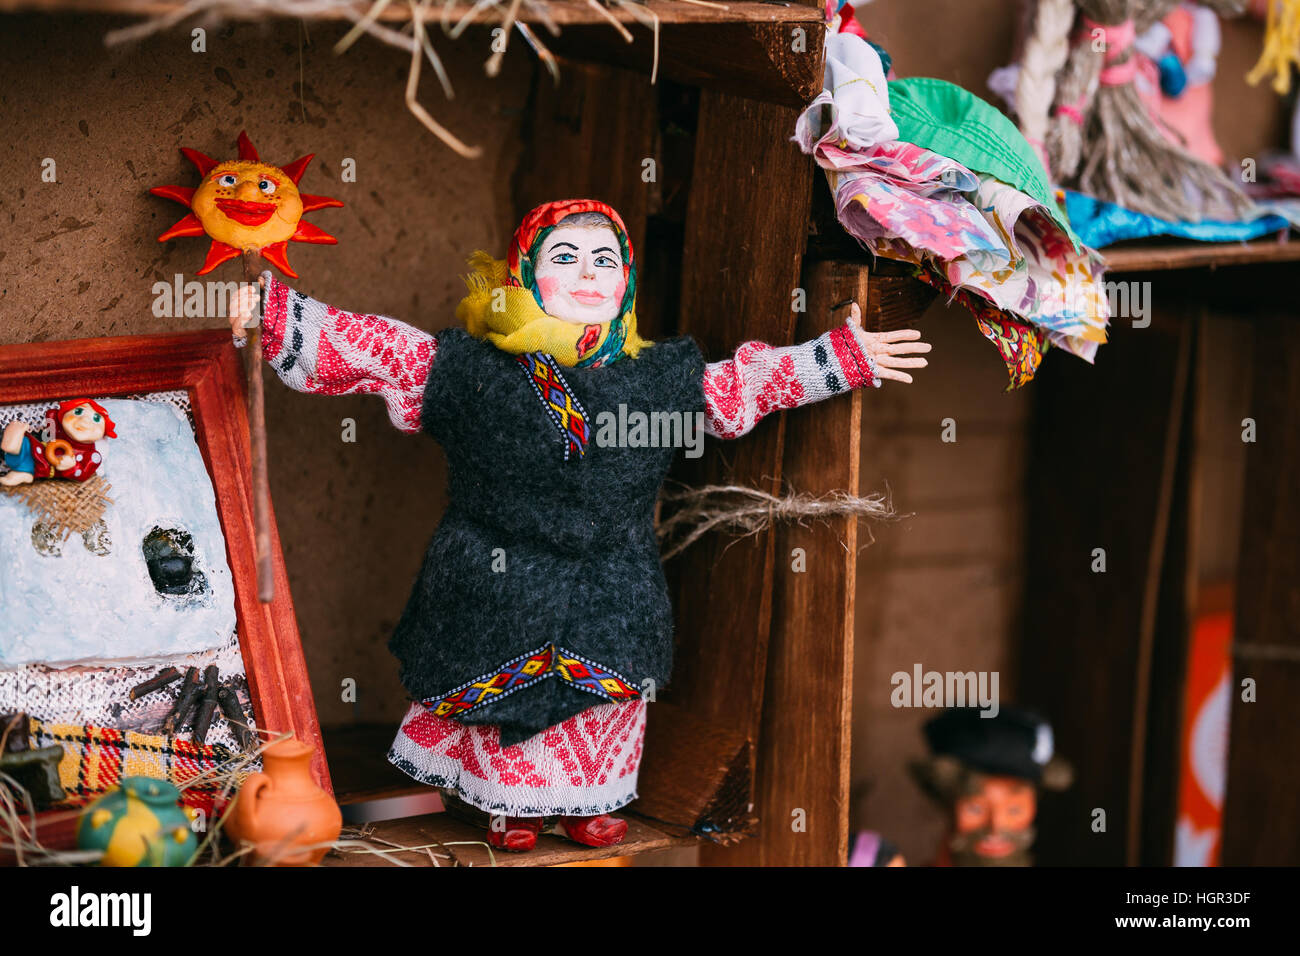 Bielorusso bambola Folk. Folk nazionale bambole sono popolari souvenir dalla Bielorussia. Foto Stock